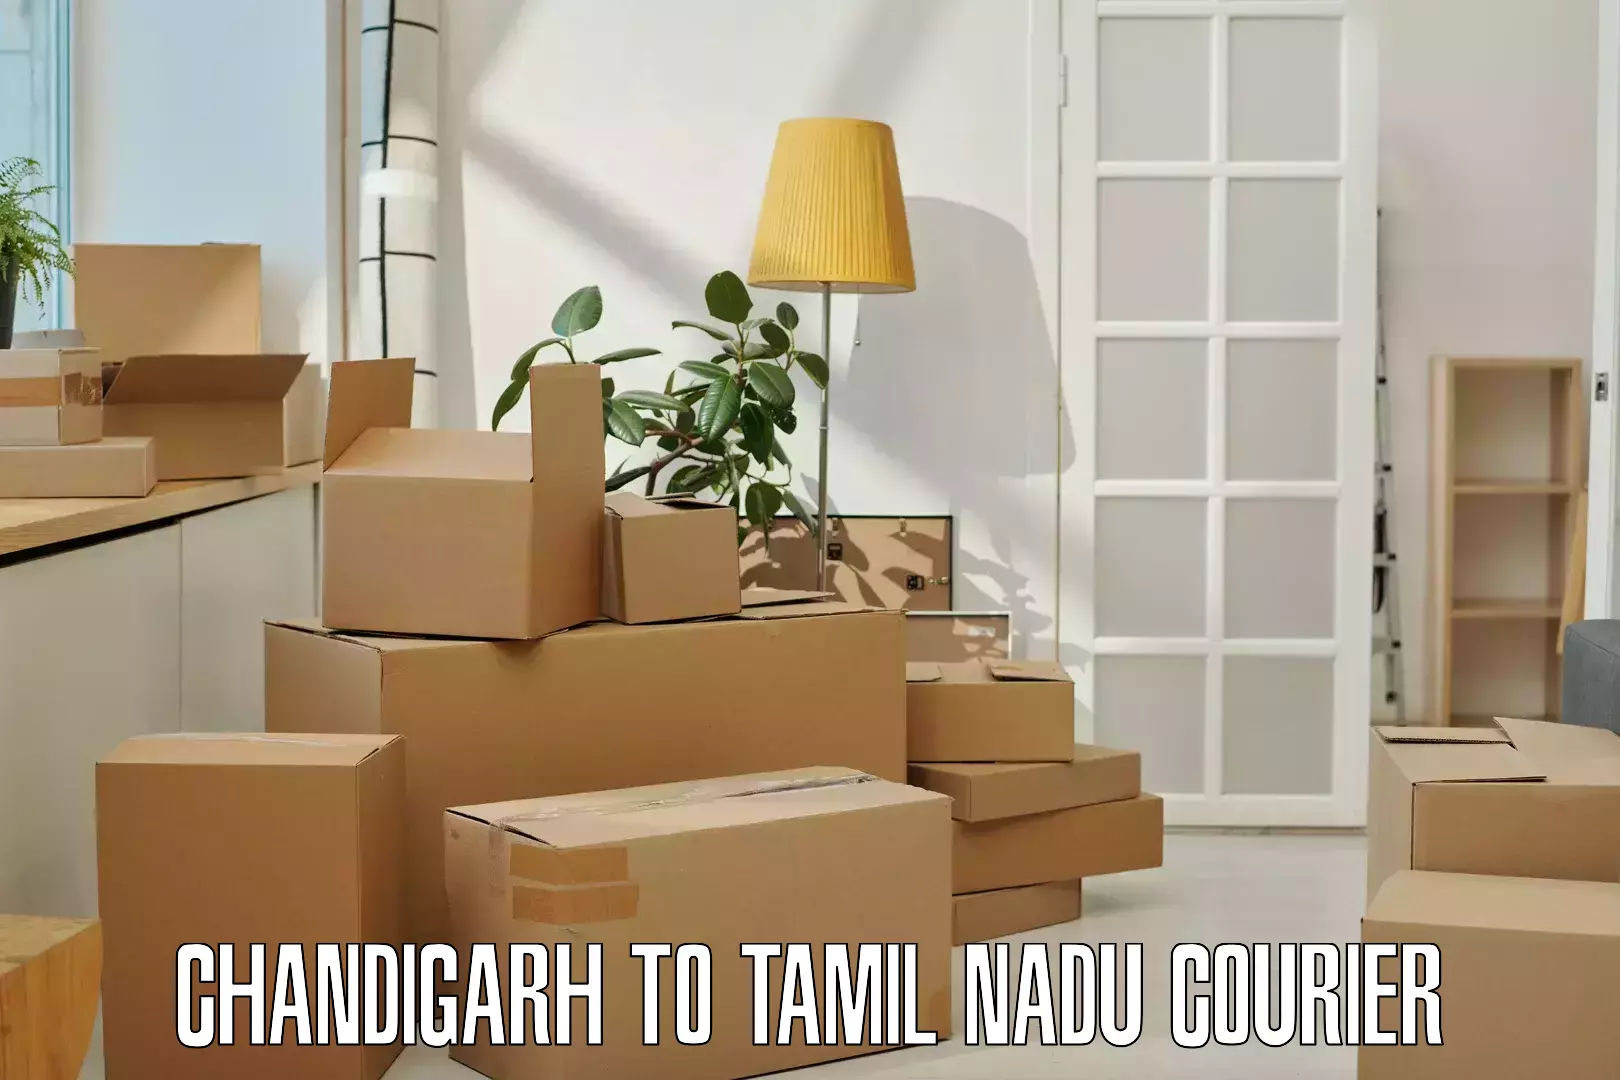 Flexible delivery schedules Chandigarh to Villupuram